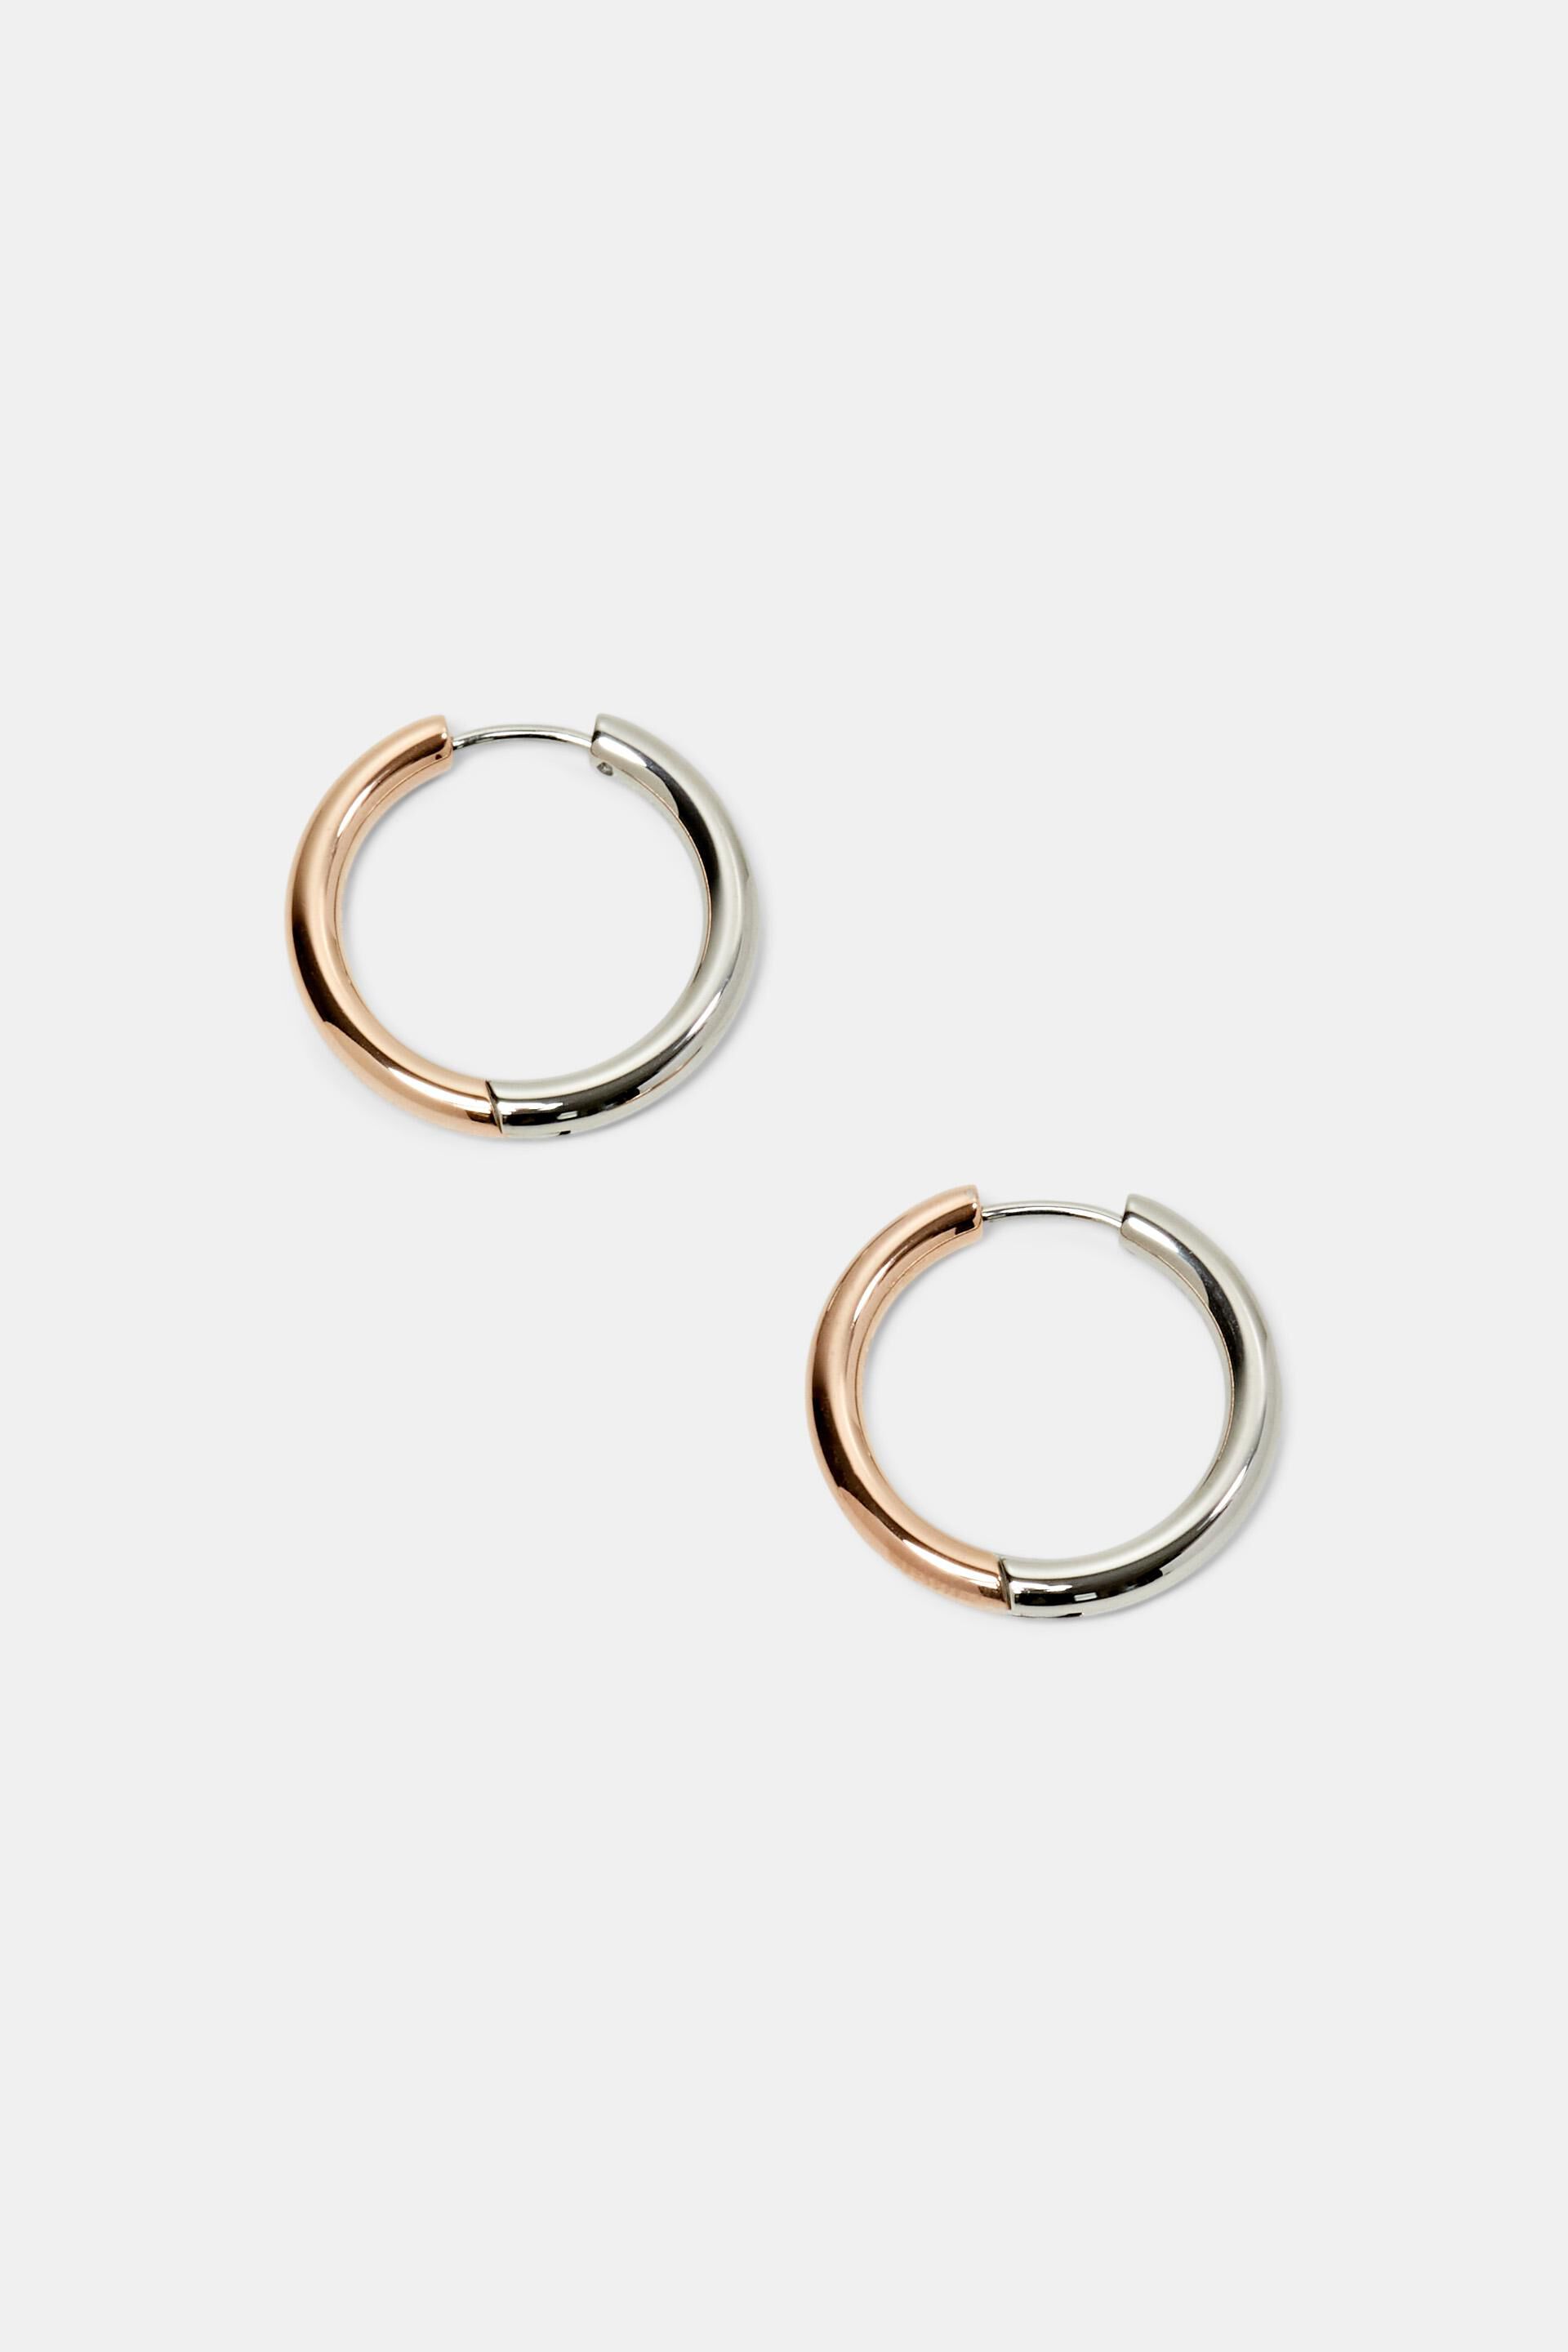 Esprit earrings, steel Bi-color hoop stainless